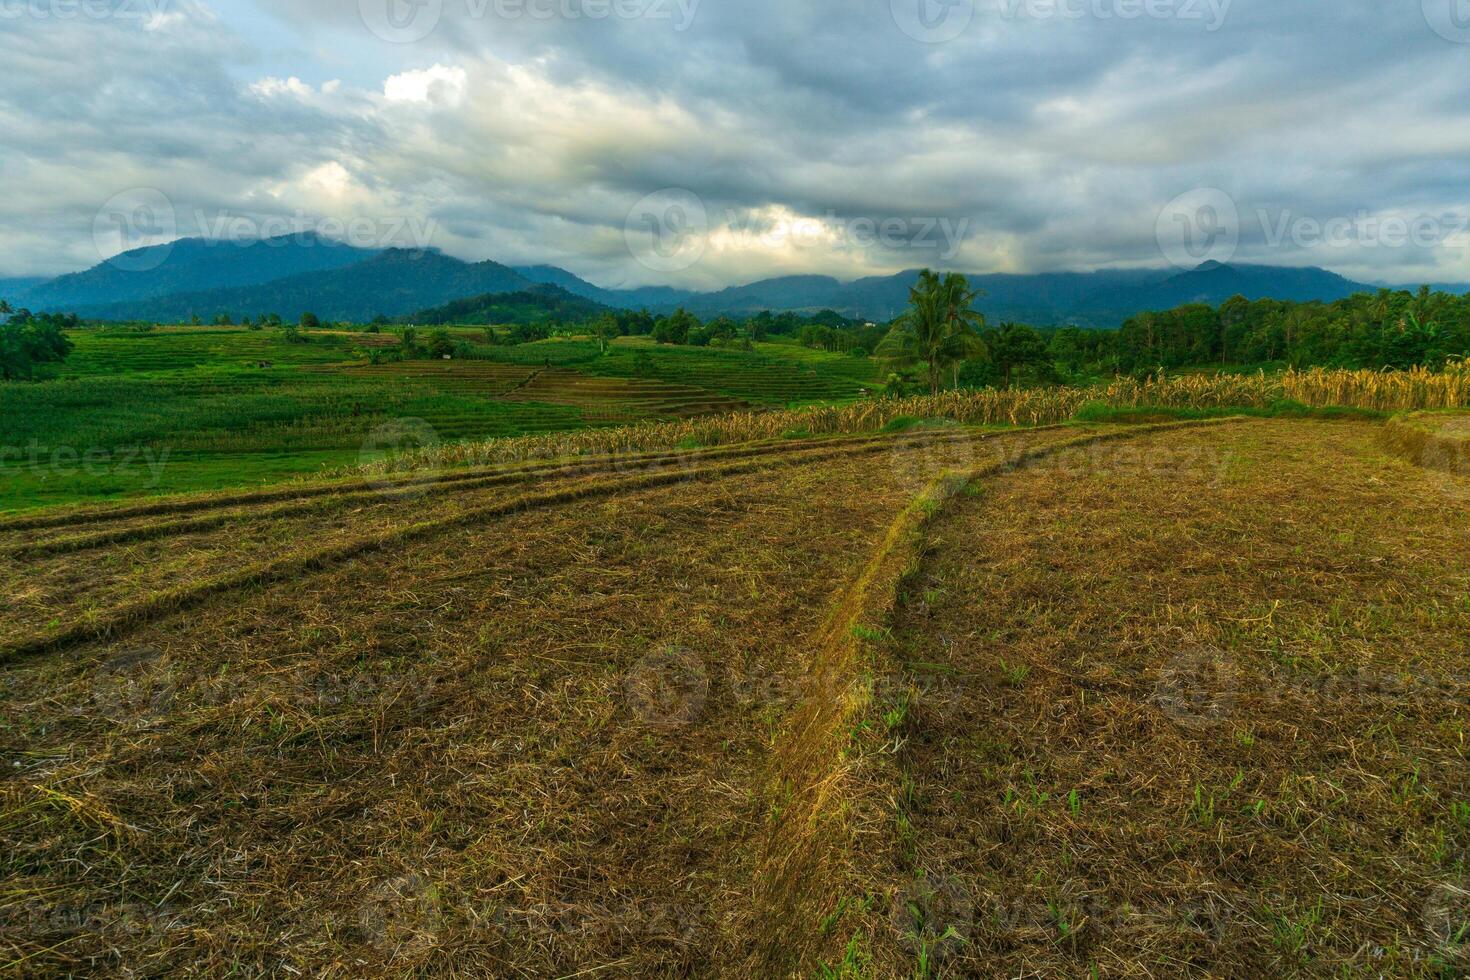 skön morgon- se från indonesien av bergen och tropisk skog foto